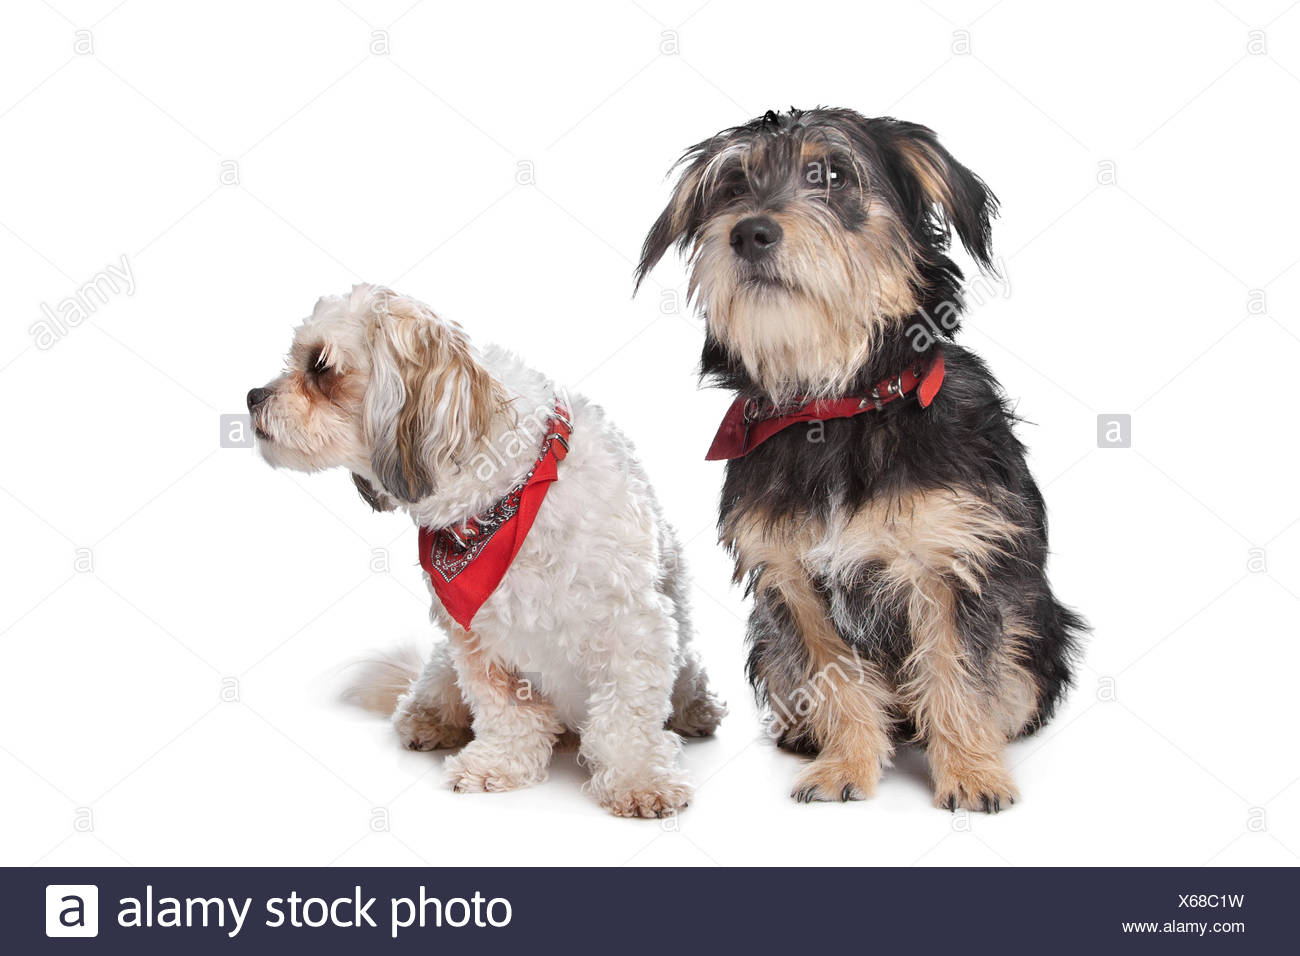 Maltese Dog Sitting Stockfotos Und Bilder Kaufen Seite 2 Alamy